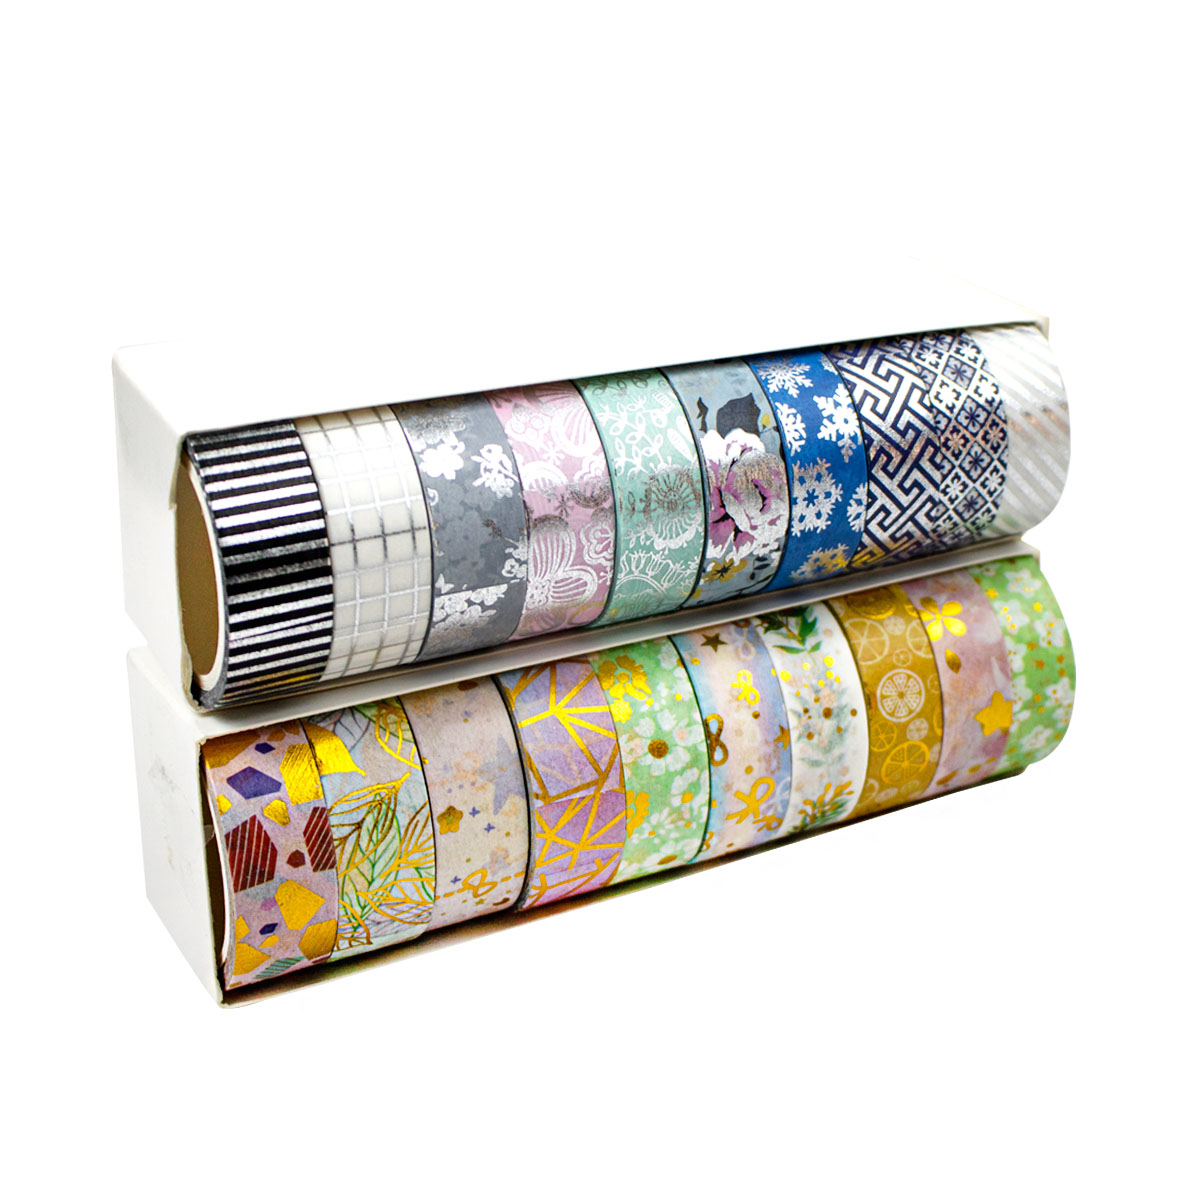 Washi Tape (Cinta Adhesiva con diseño) paquete con 10 unidades